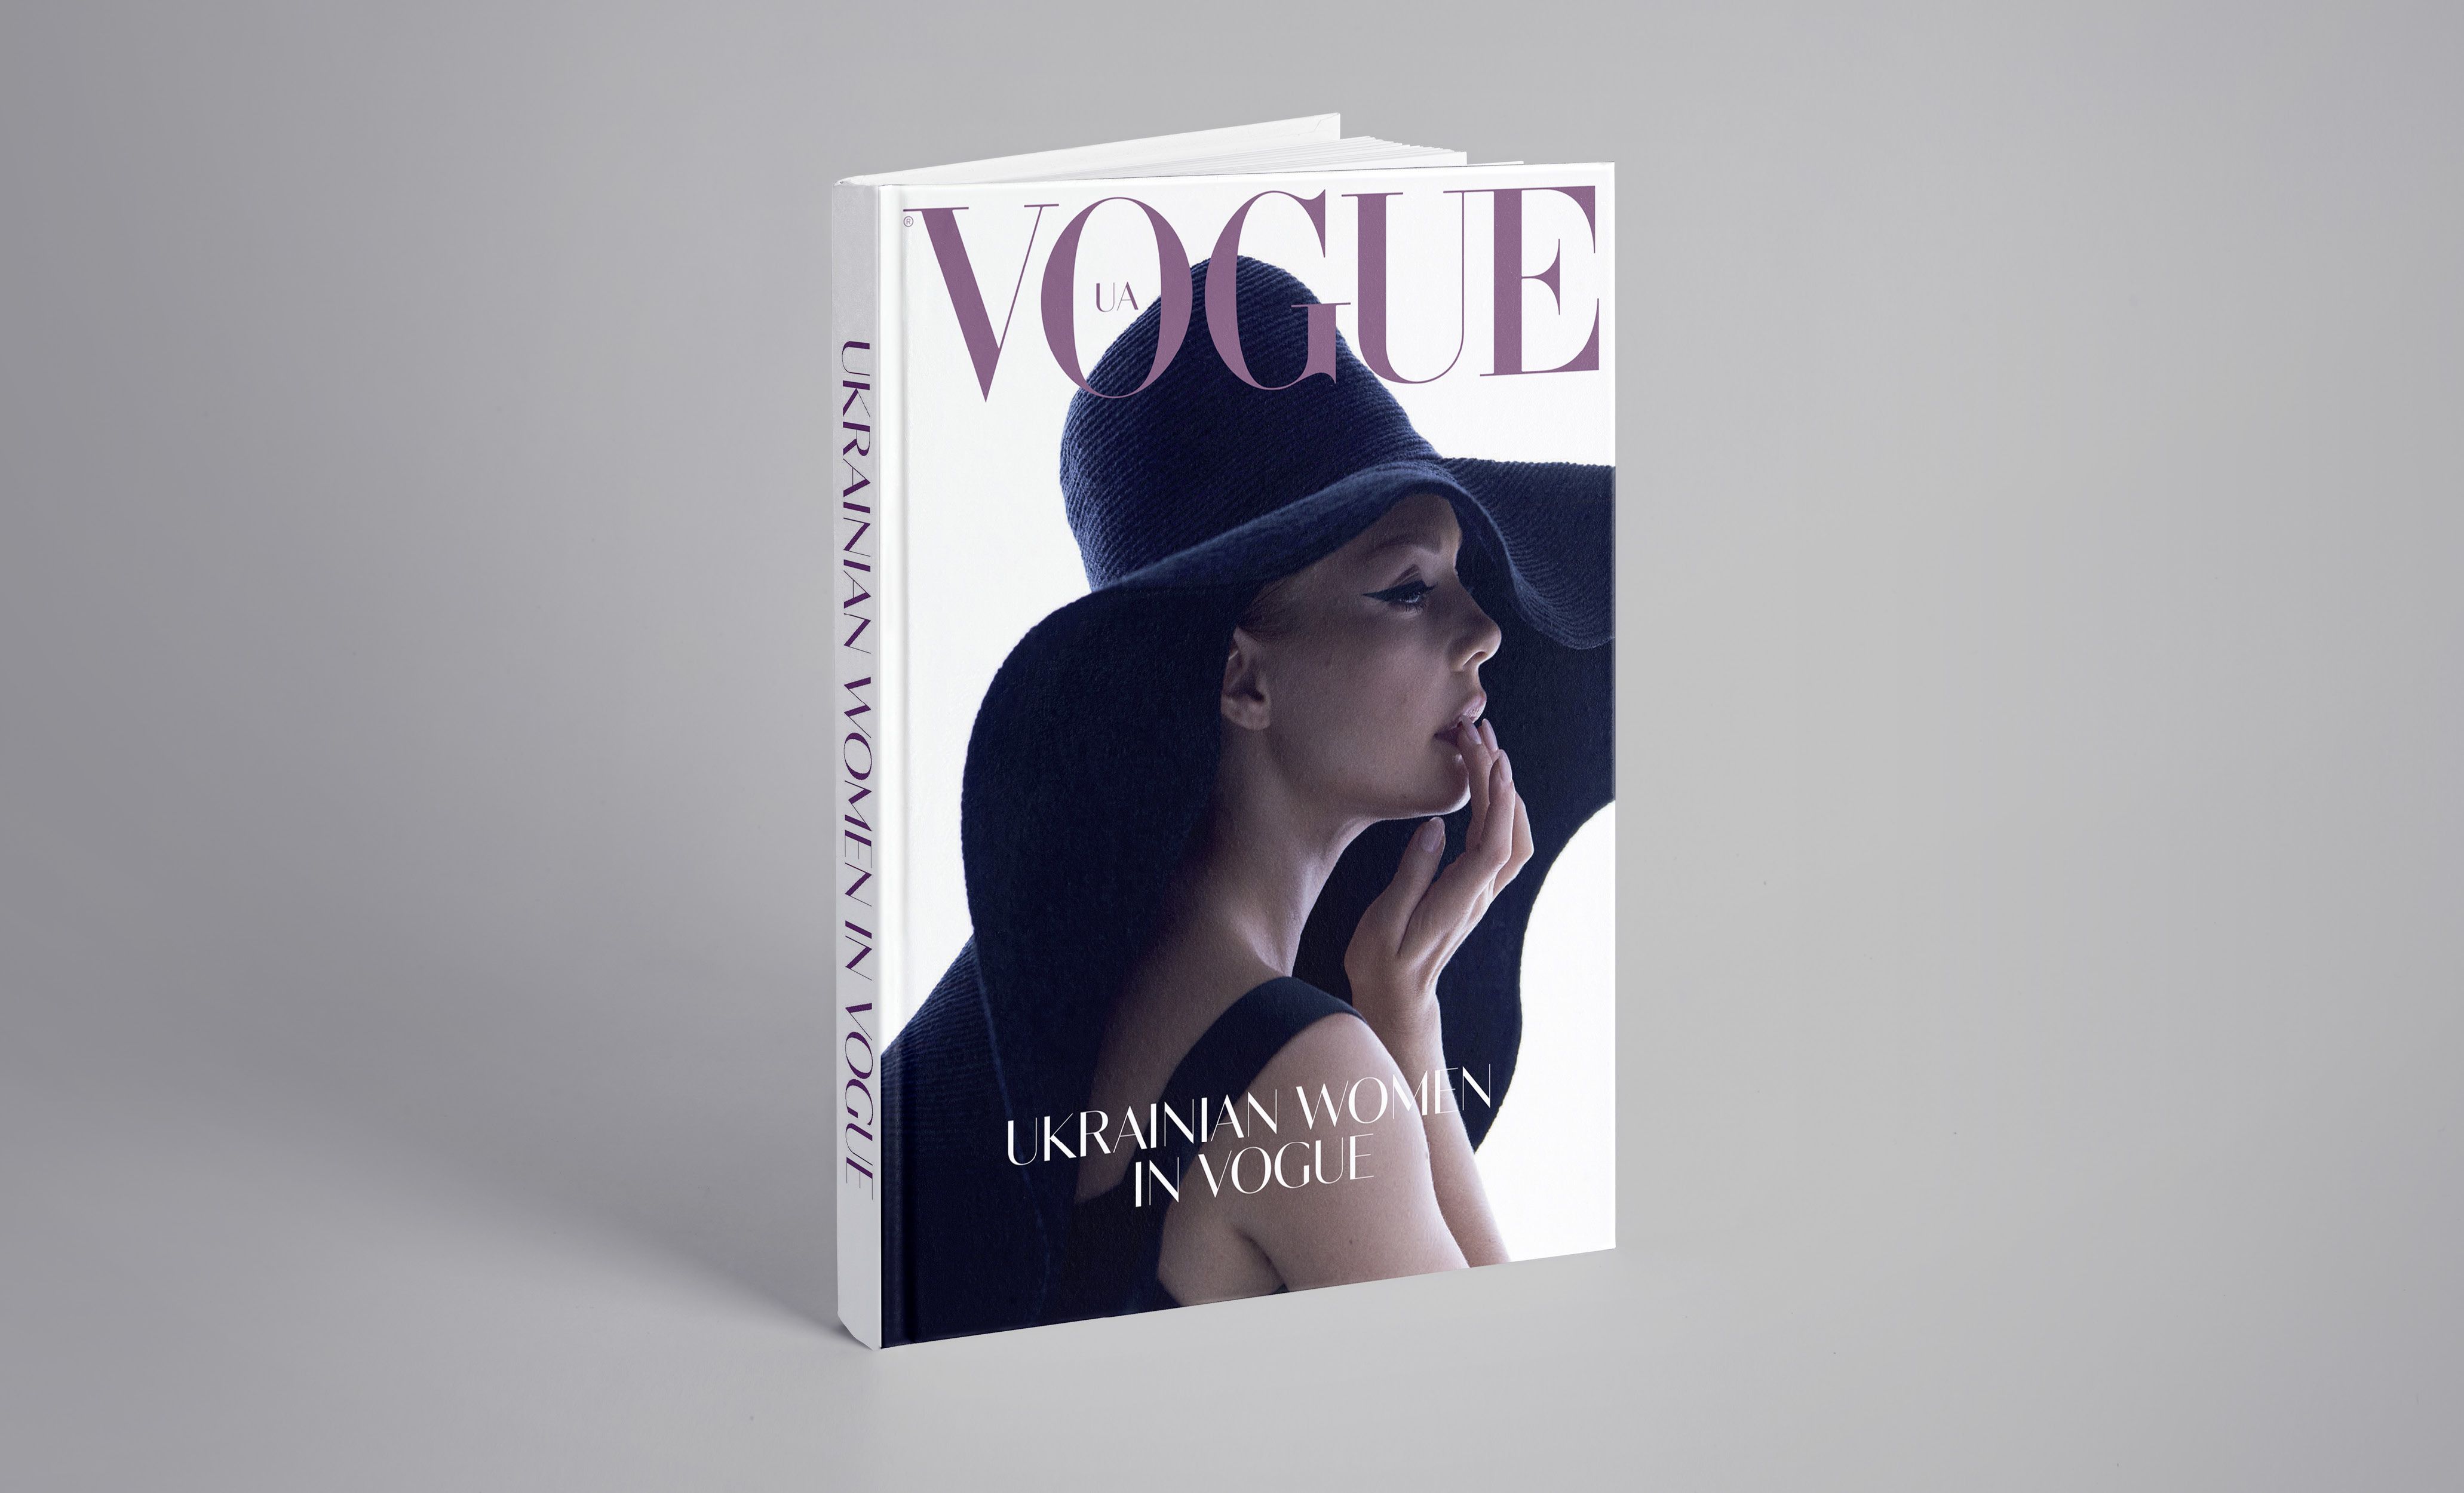 Vogue UA випустив антологію про успішних українських жінок